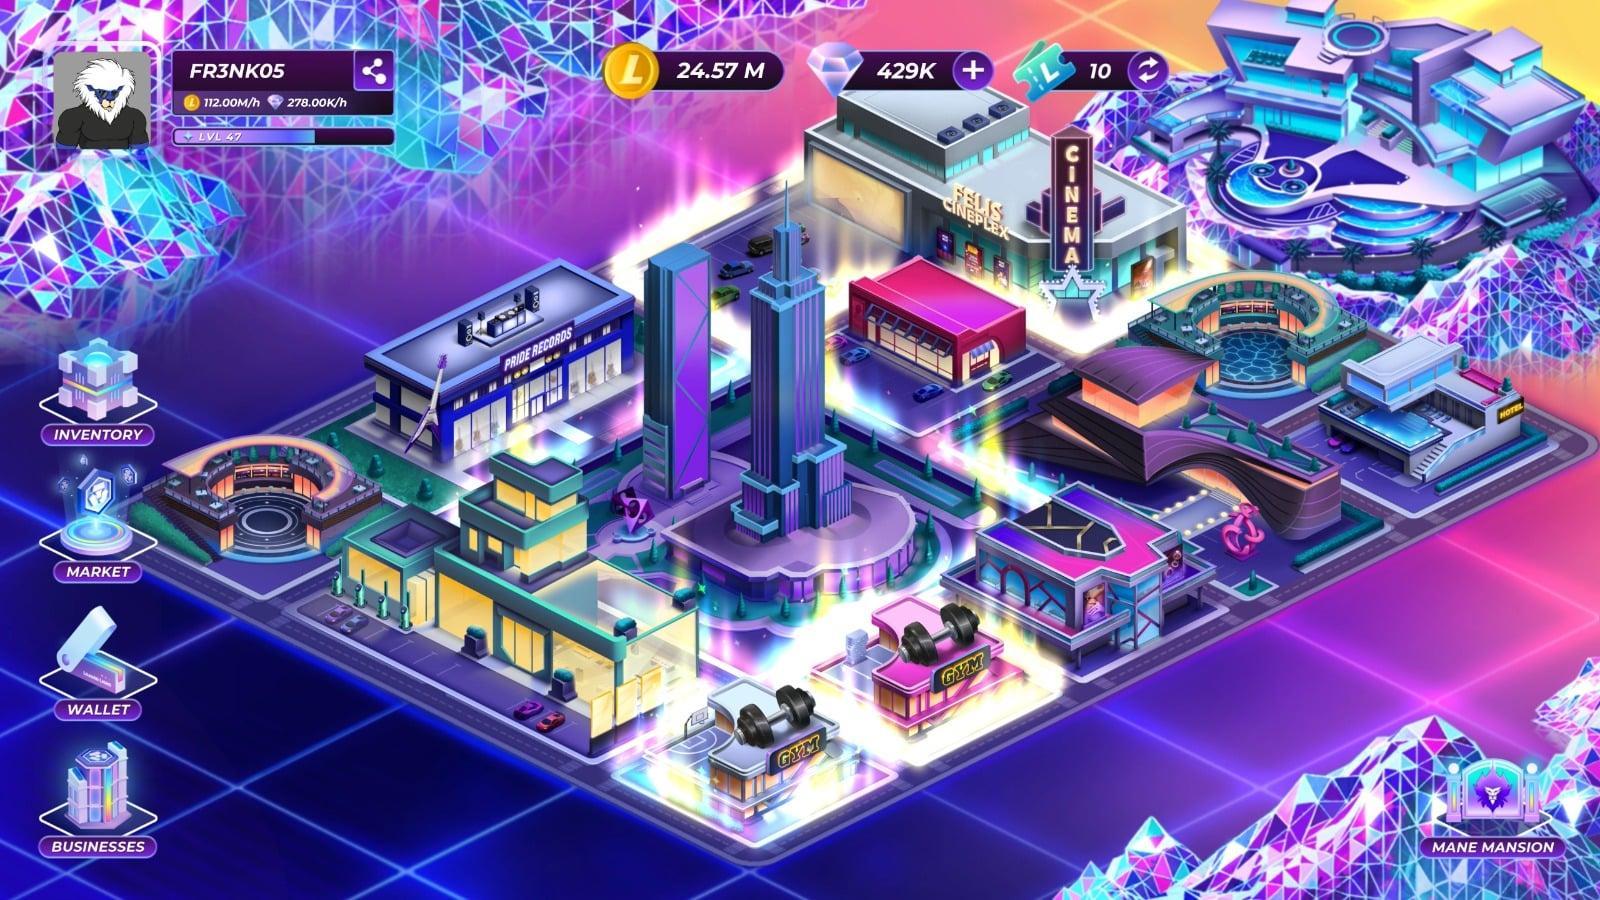 लोडेड लायंस: माने सिटी एक टाइकून वेब3 गेम है जहां खिलाड़ी अपने सपनों के शहरों और हवेली को सोने और हीरे से डिजाइन और निर्माण करते हैं।